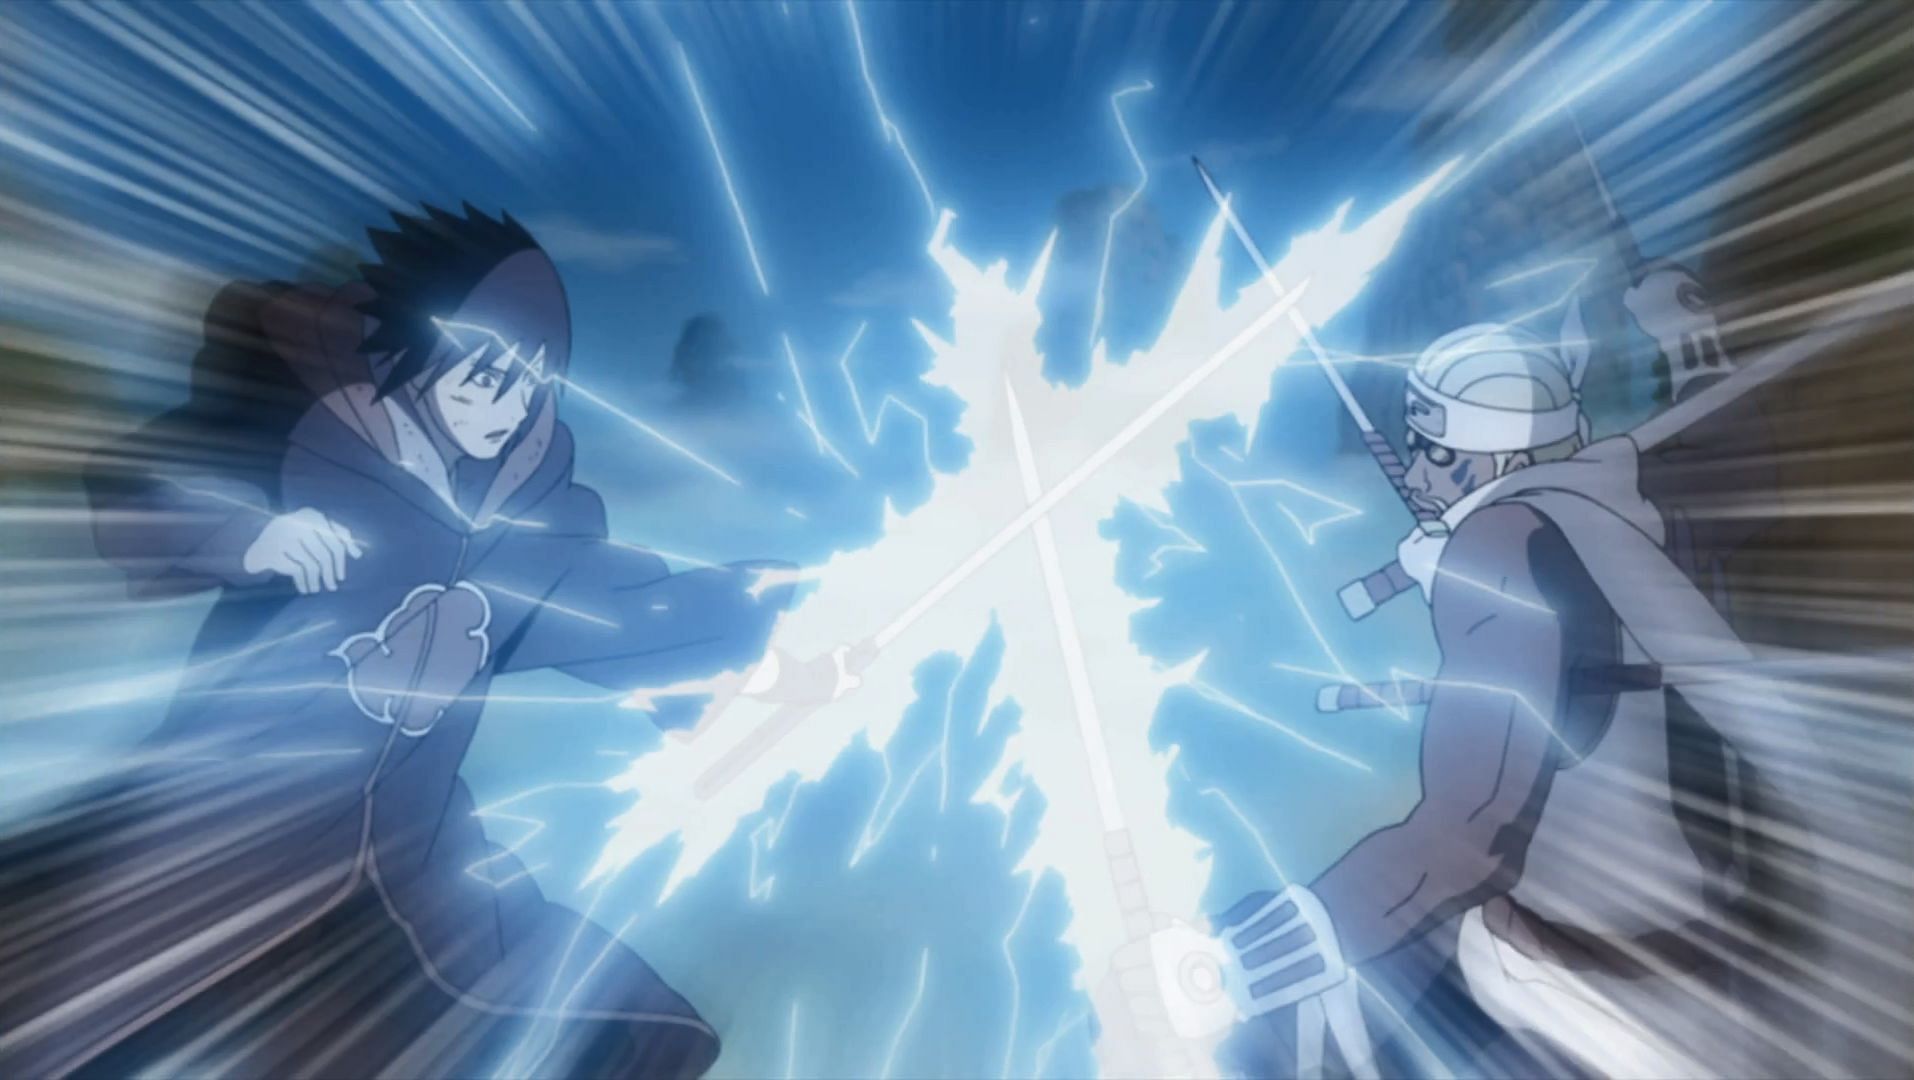 Sasuke vs Killer Bee (Image via Studio Pierrot)